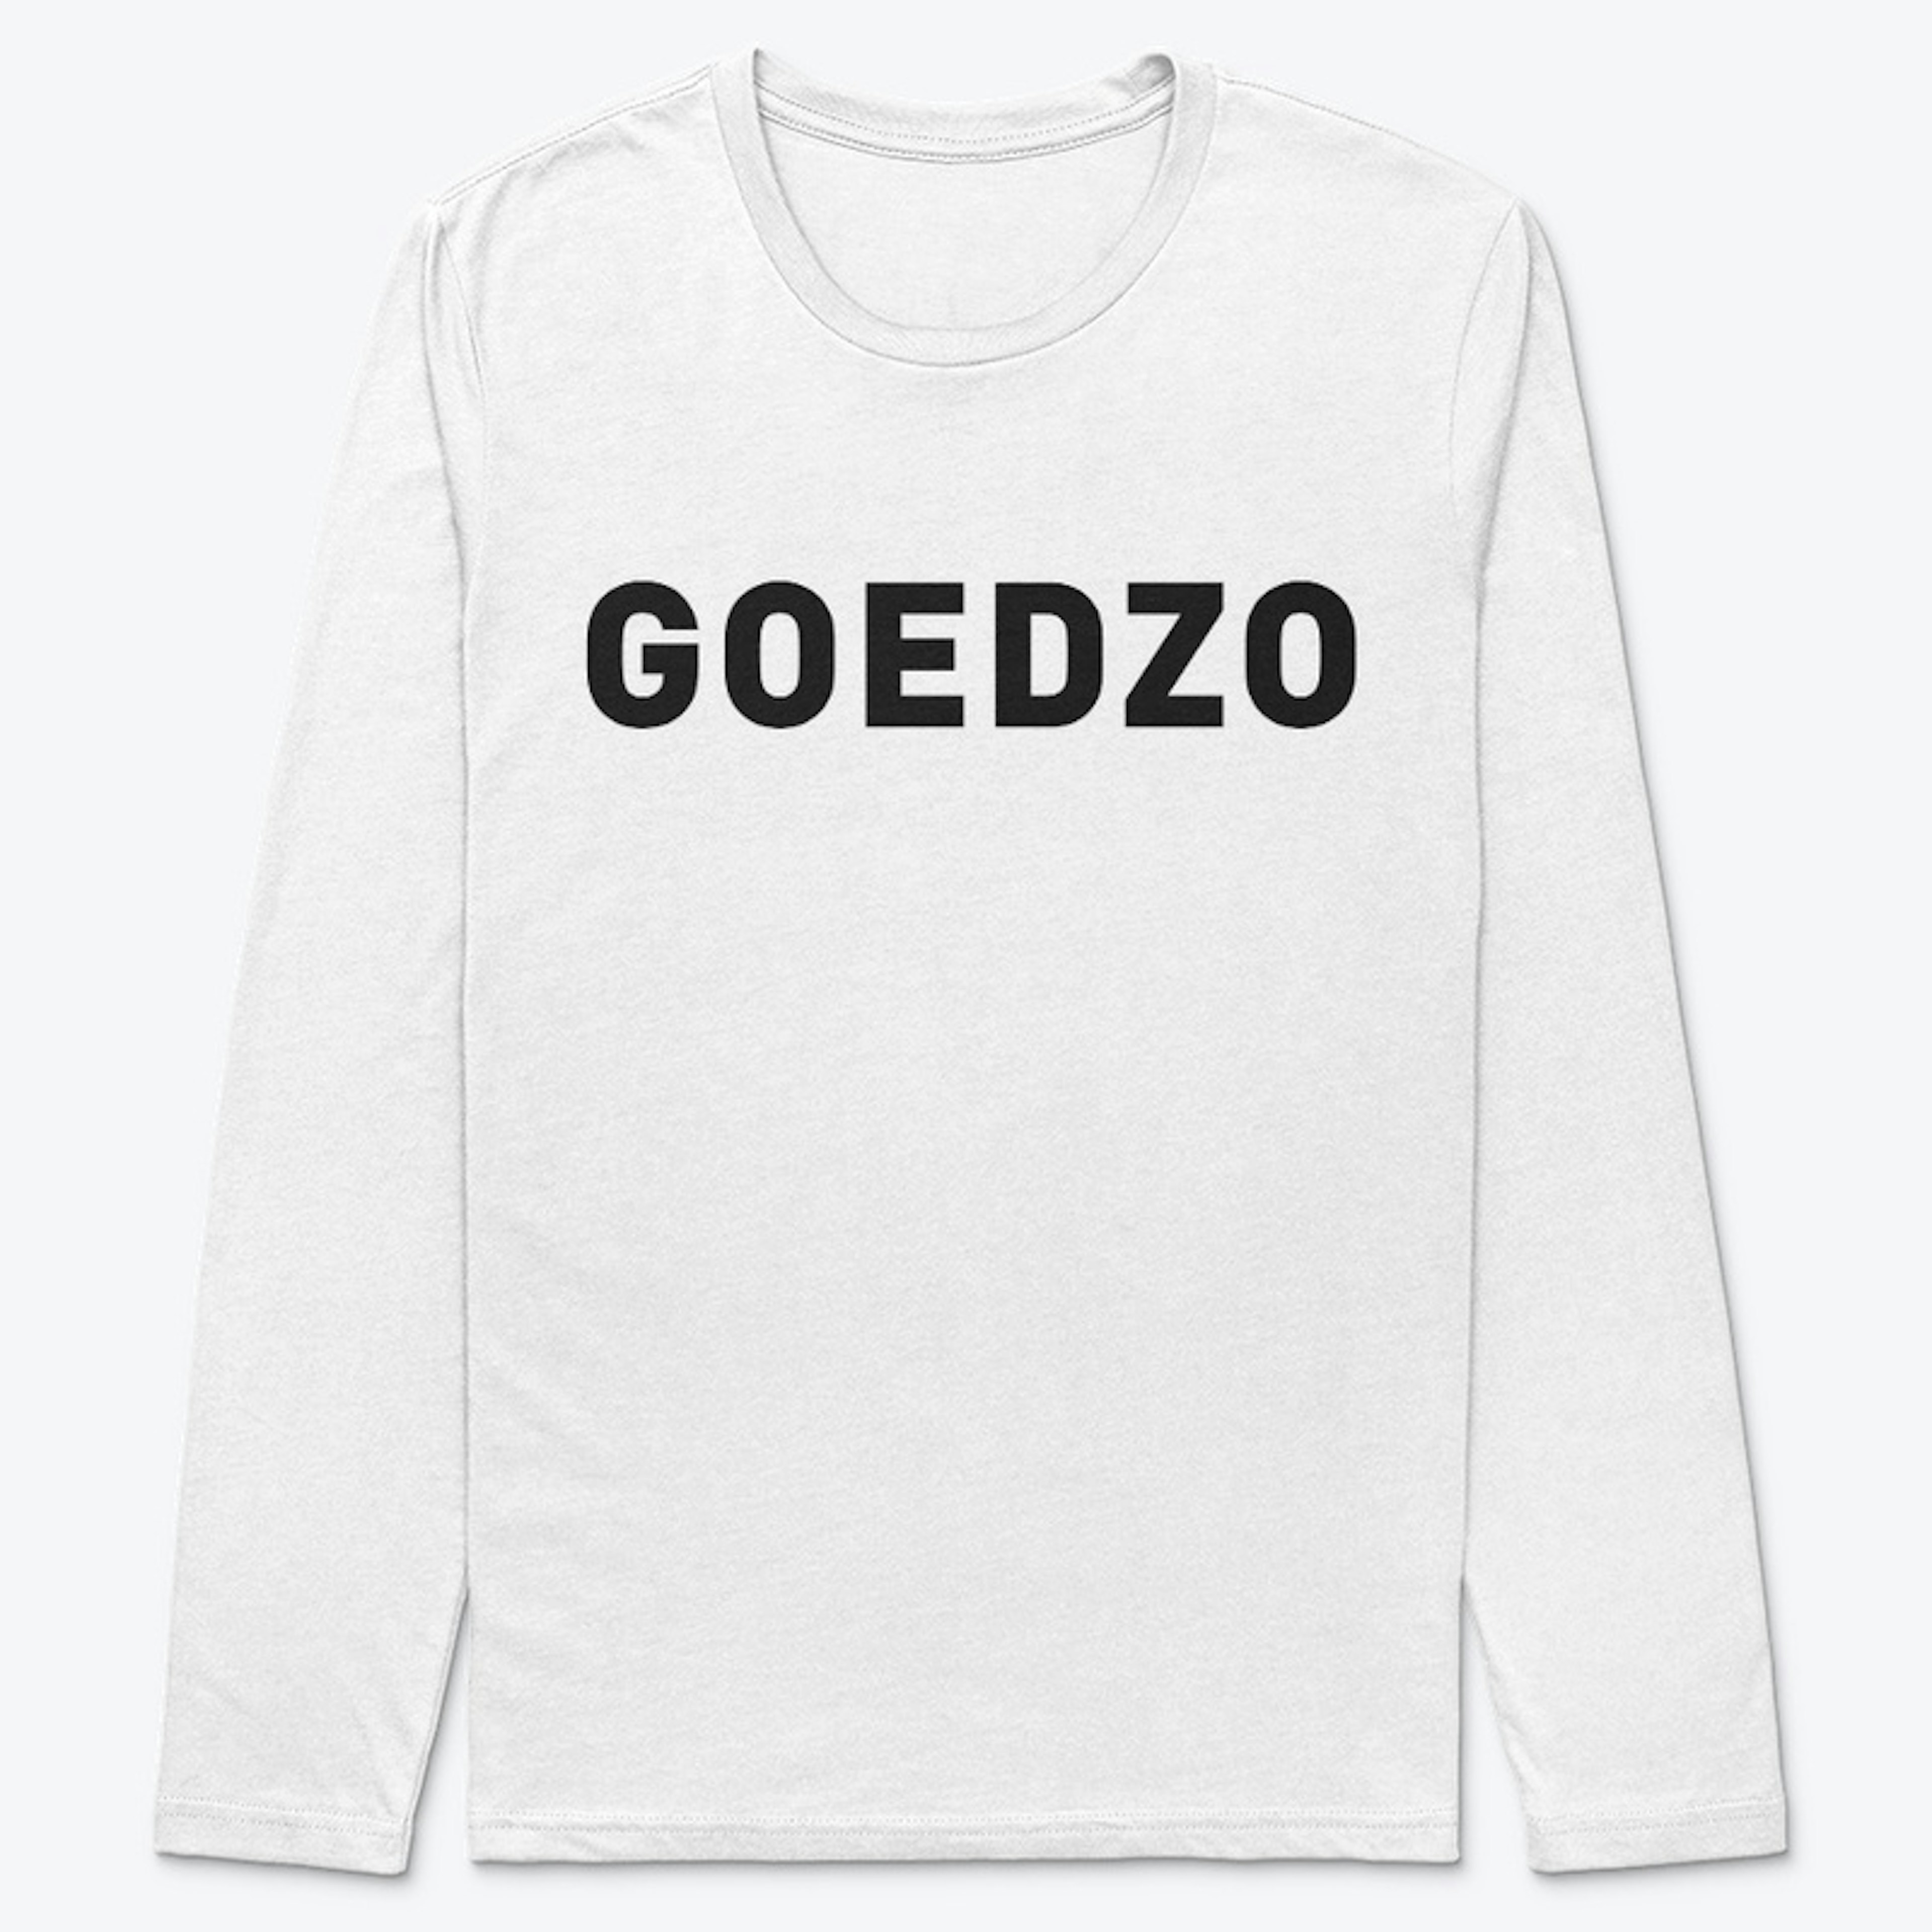 Goedzo